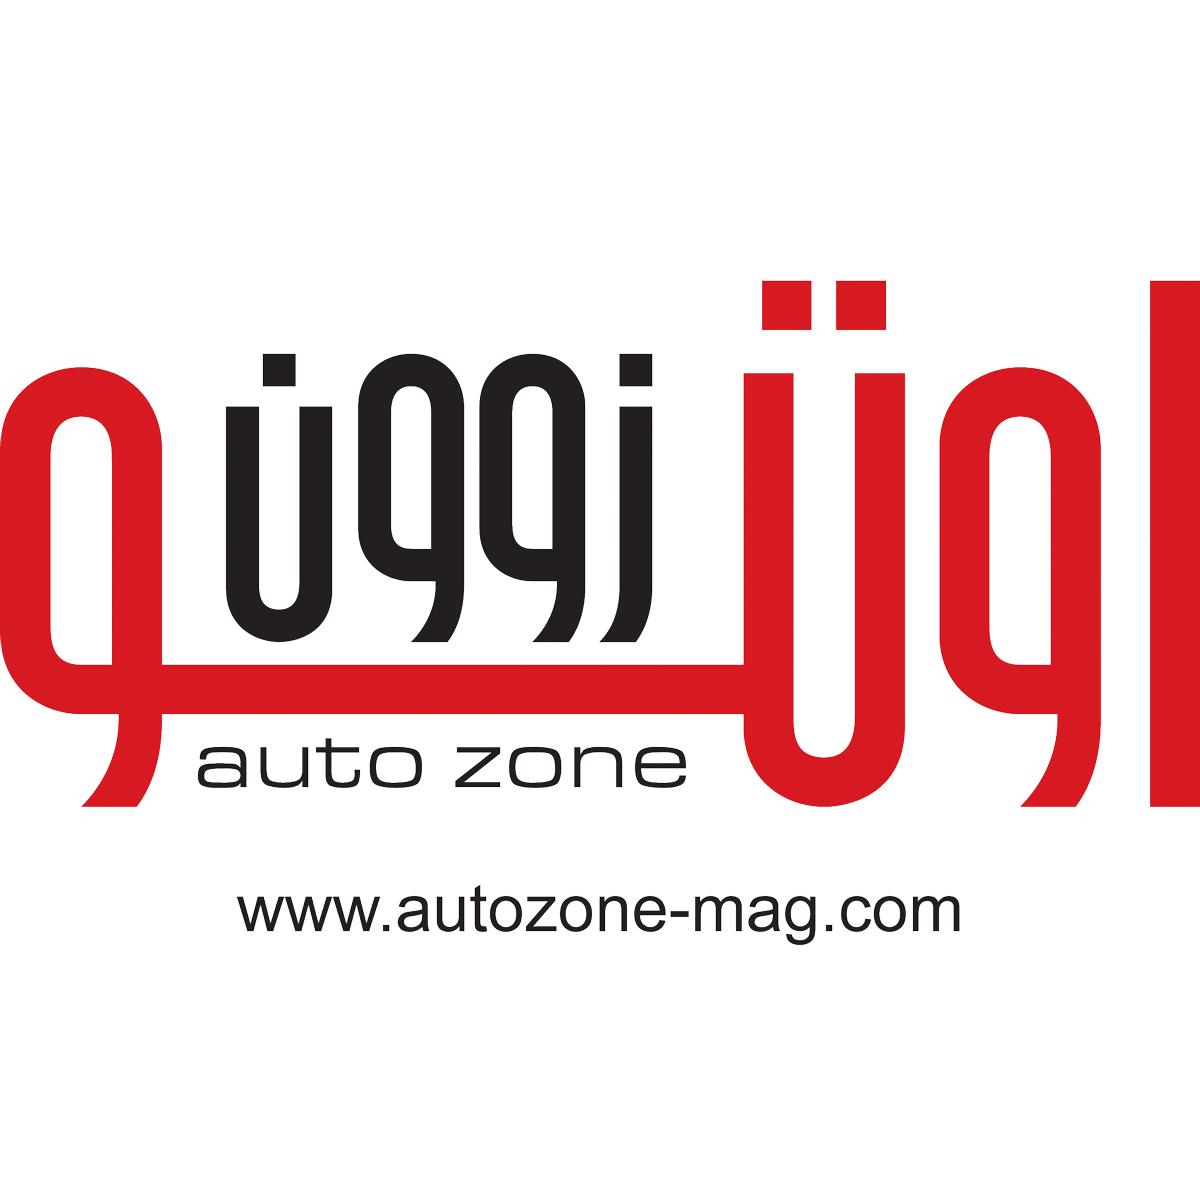 autozone-mag.com Logo